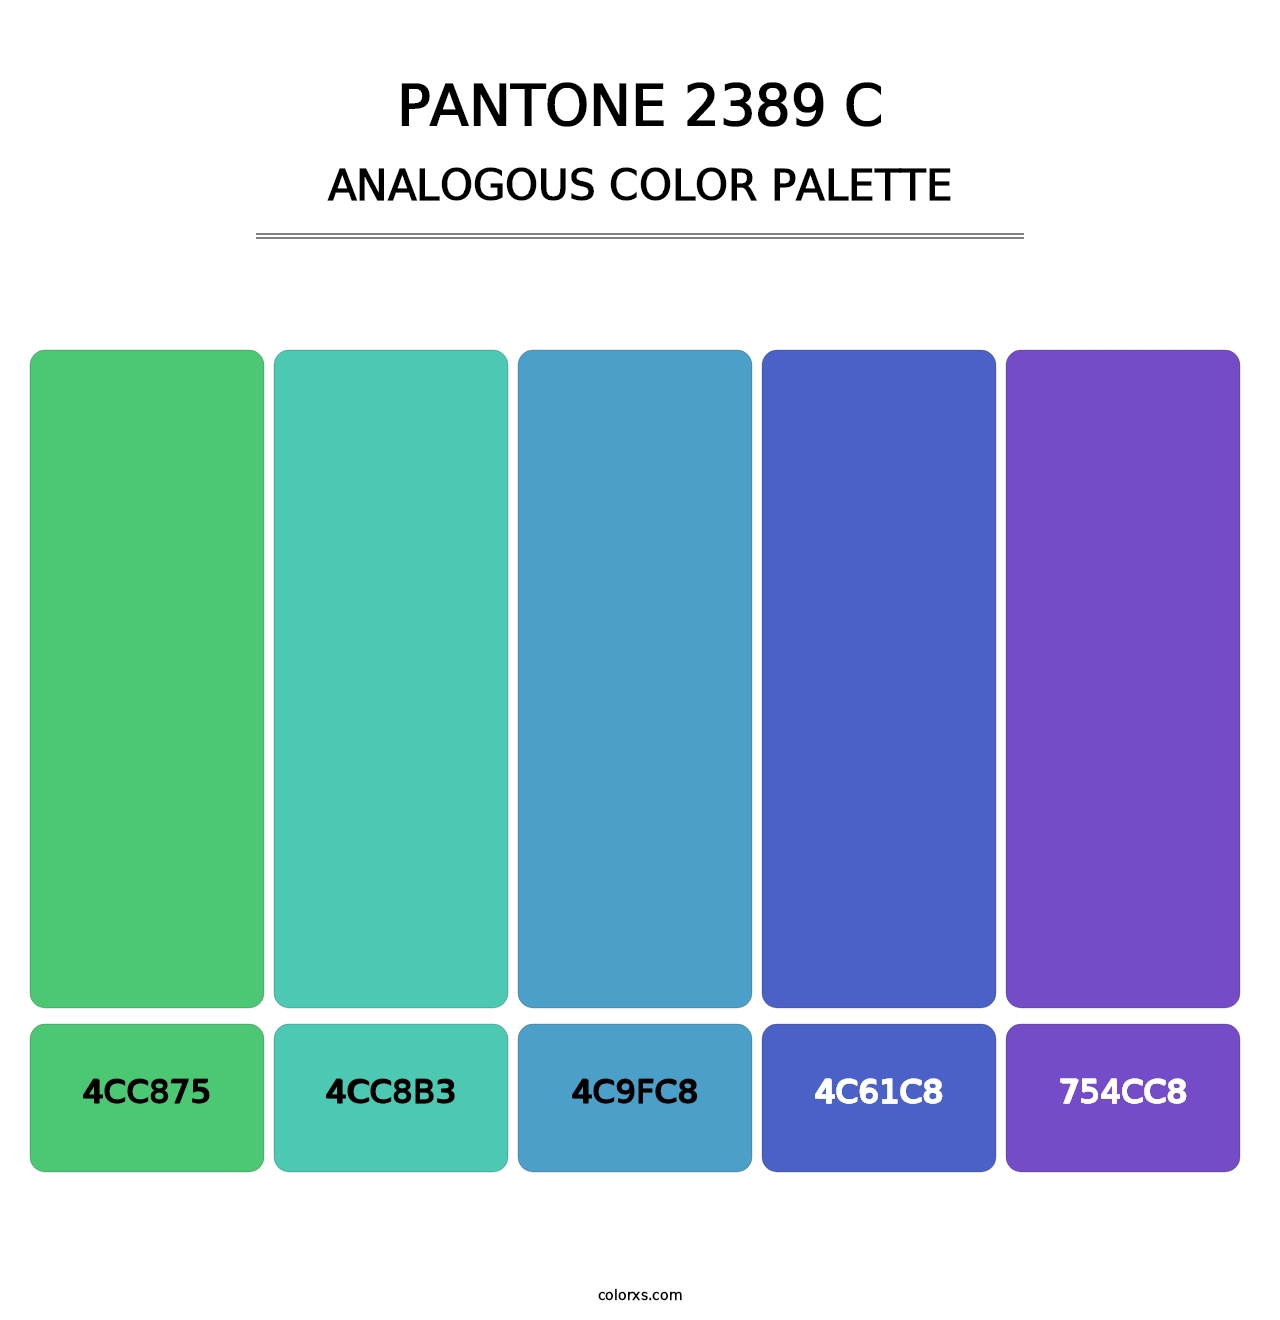 PANTONE 2389 C - Analogous Color Palette